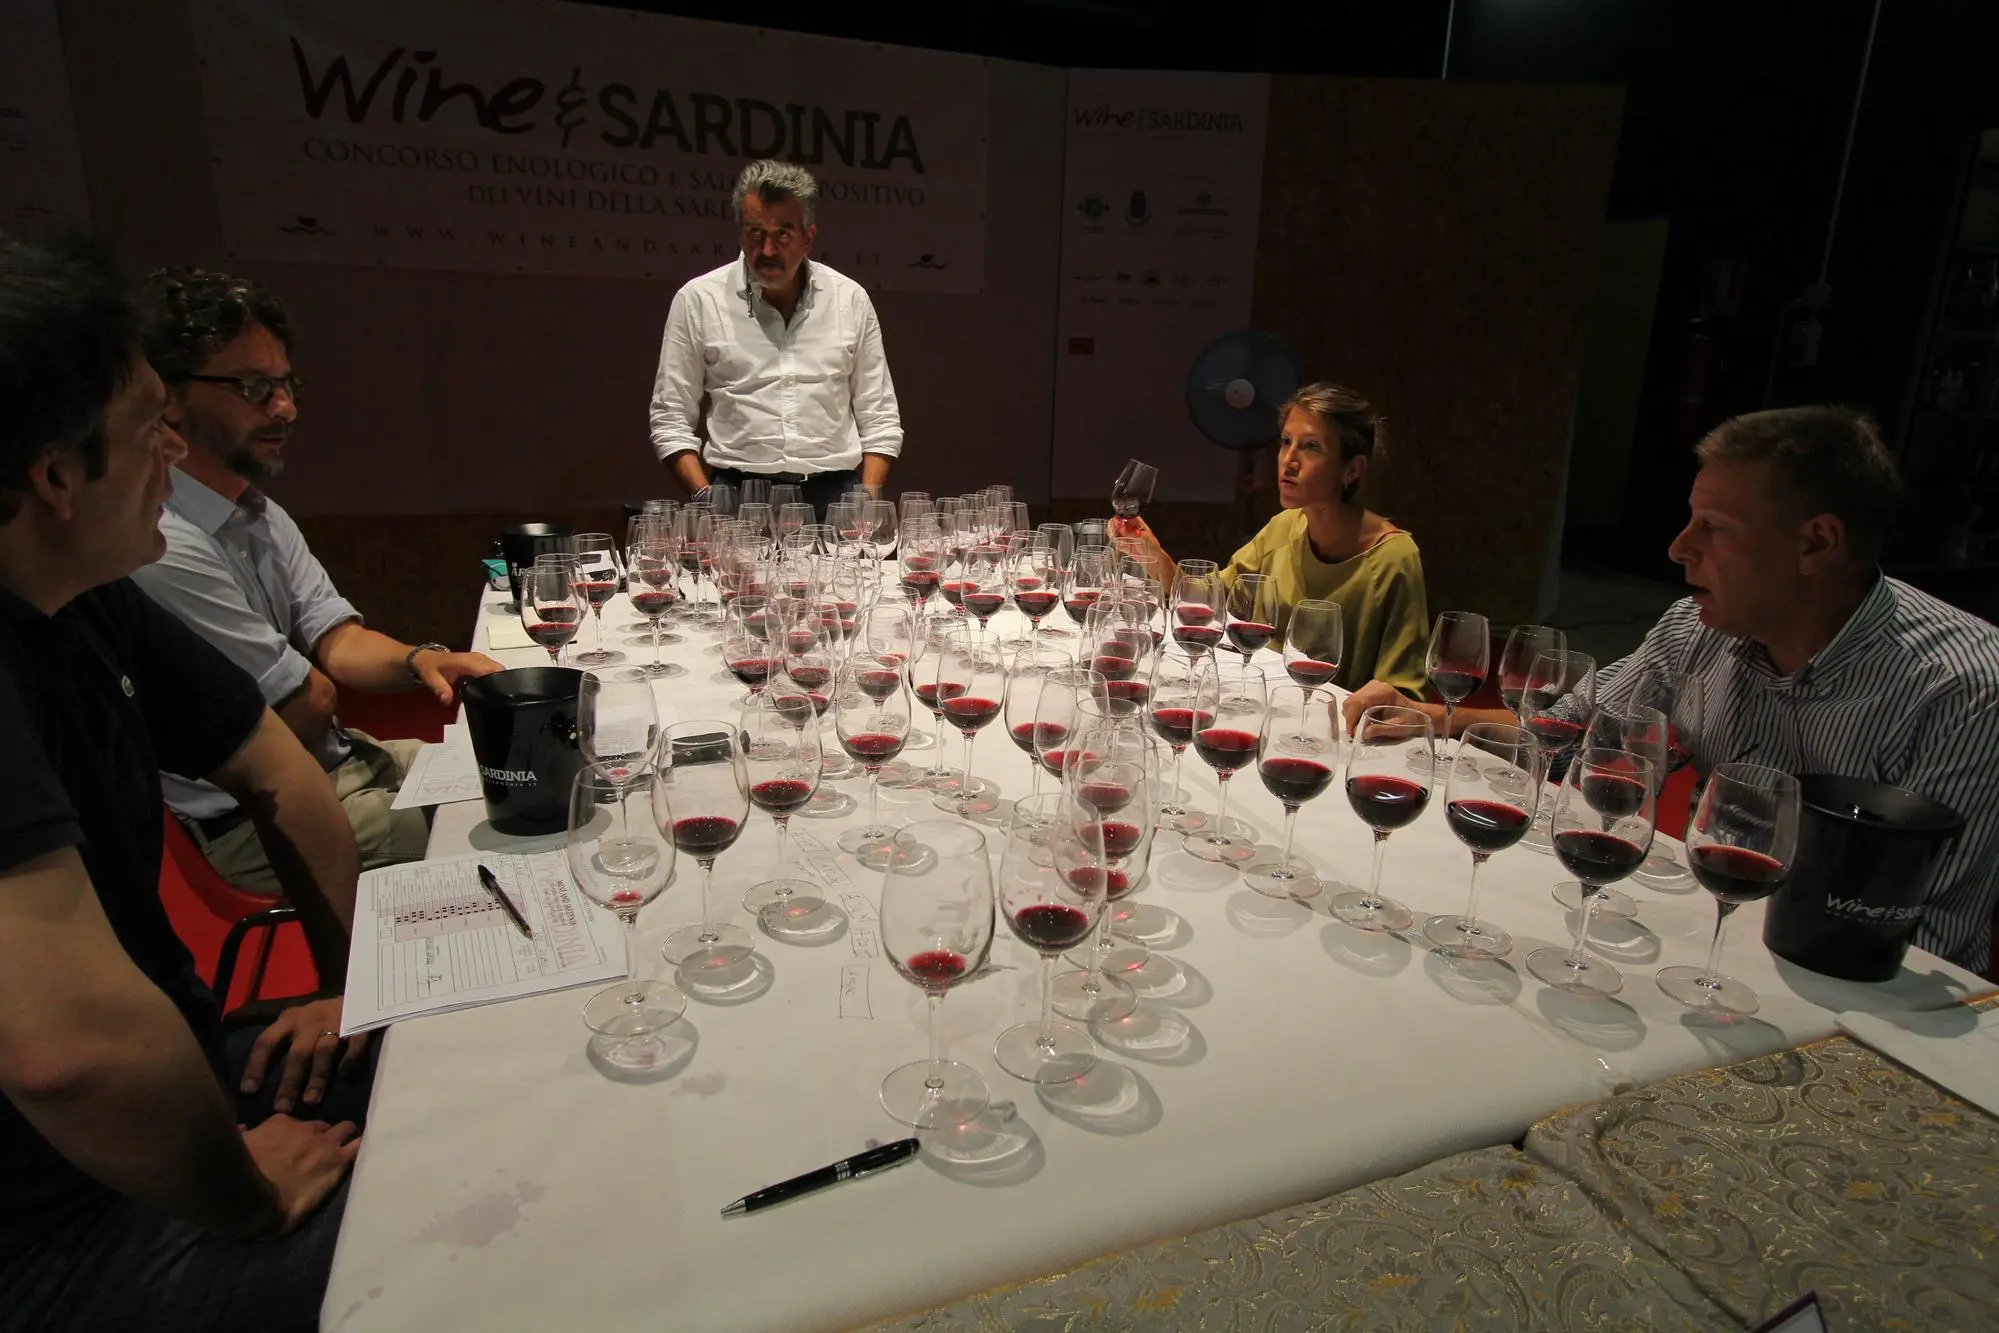 I giudici del Concorso enologico durante la degustazione dei campioni (foto Wine and Sardinia)